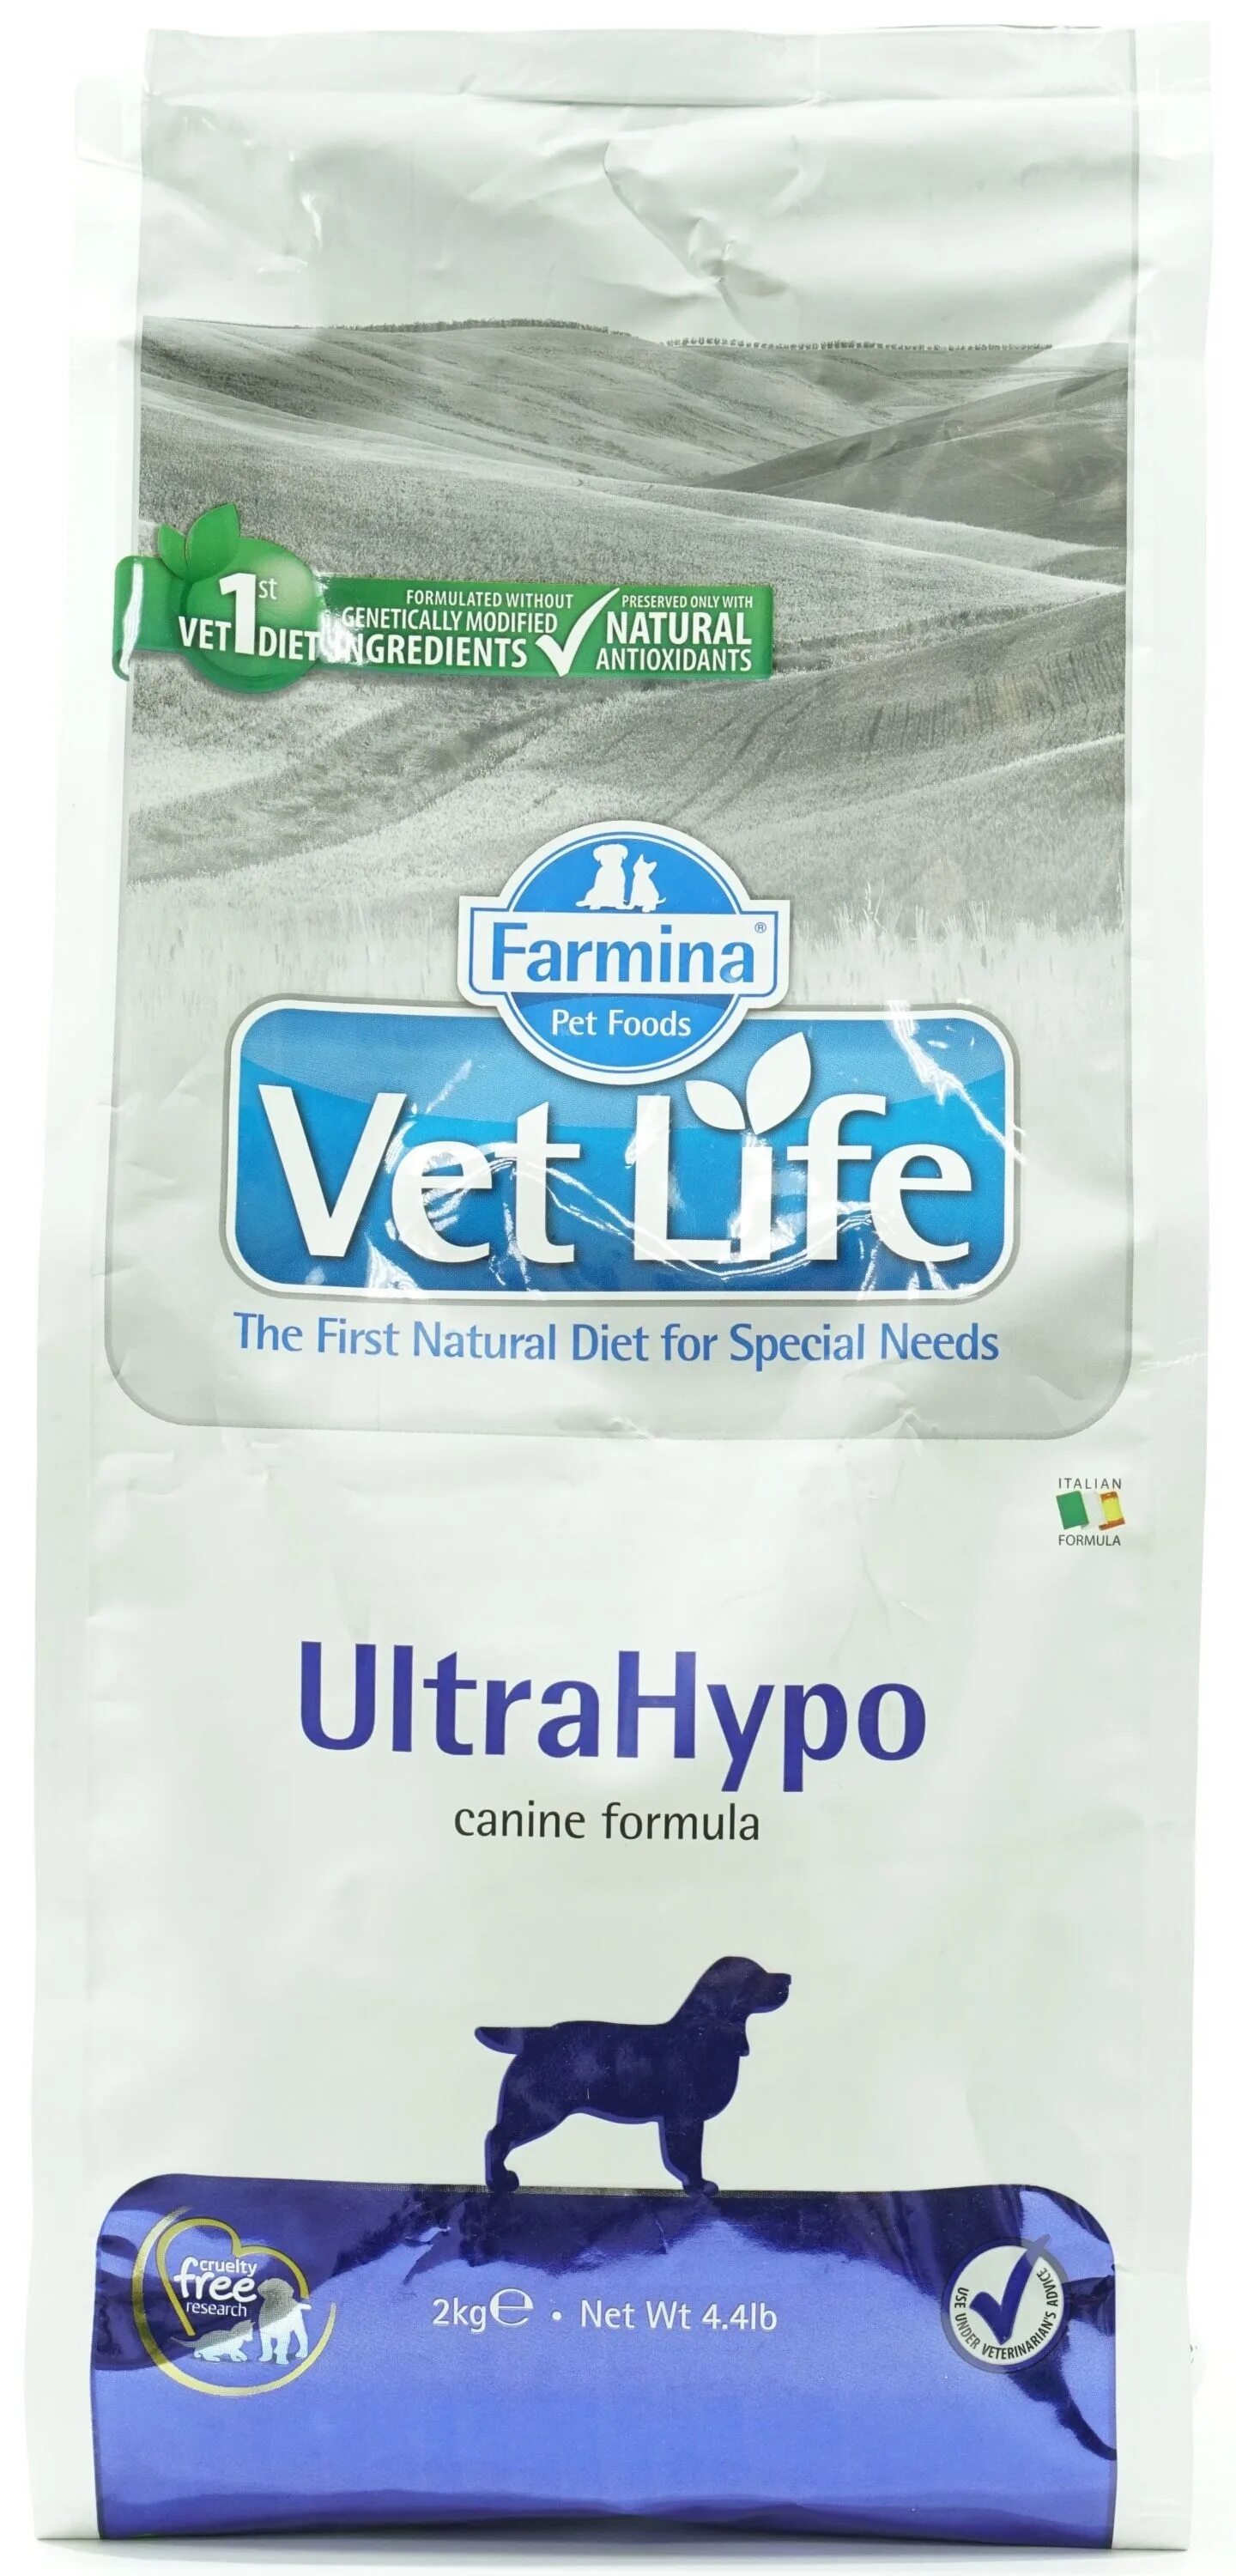 Фармина ультра гипоаллергенный корм для собак. Vet Life ULTRAHYPO для собак. Корм Фармина ультра гипо для собак. Farmina vet Life ULTRAHYPO для собак.